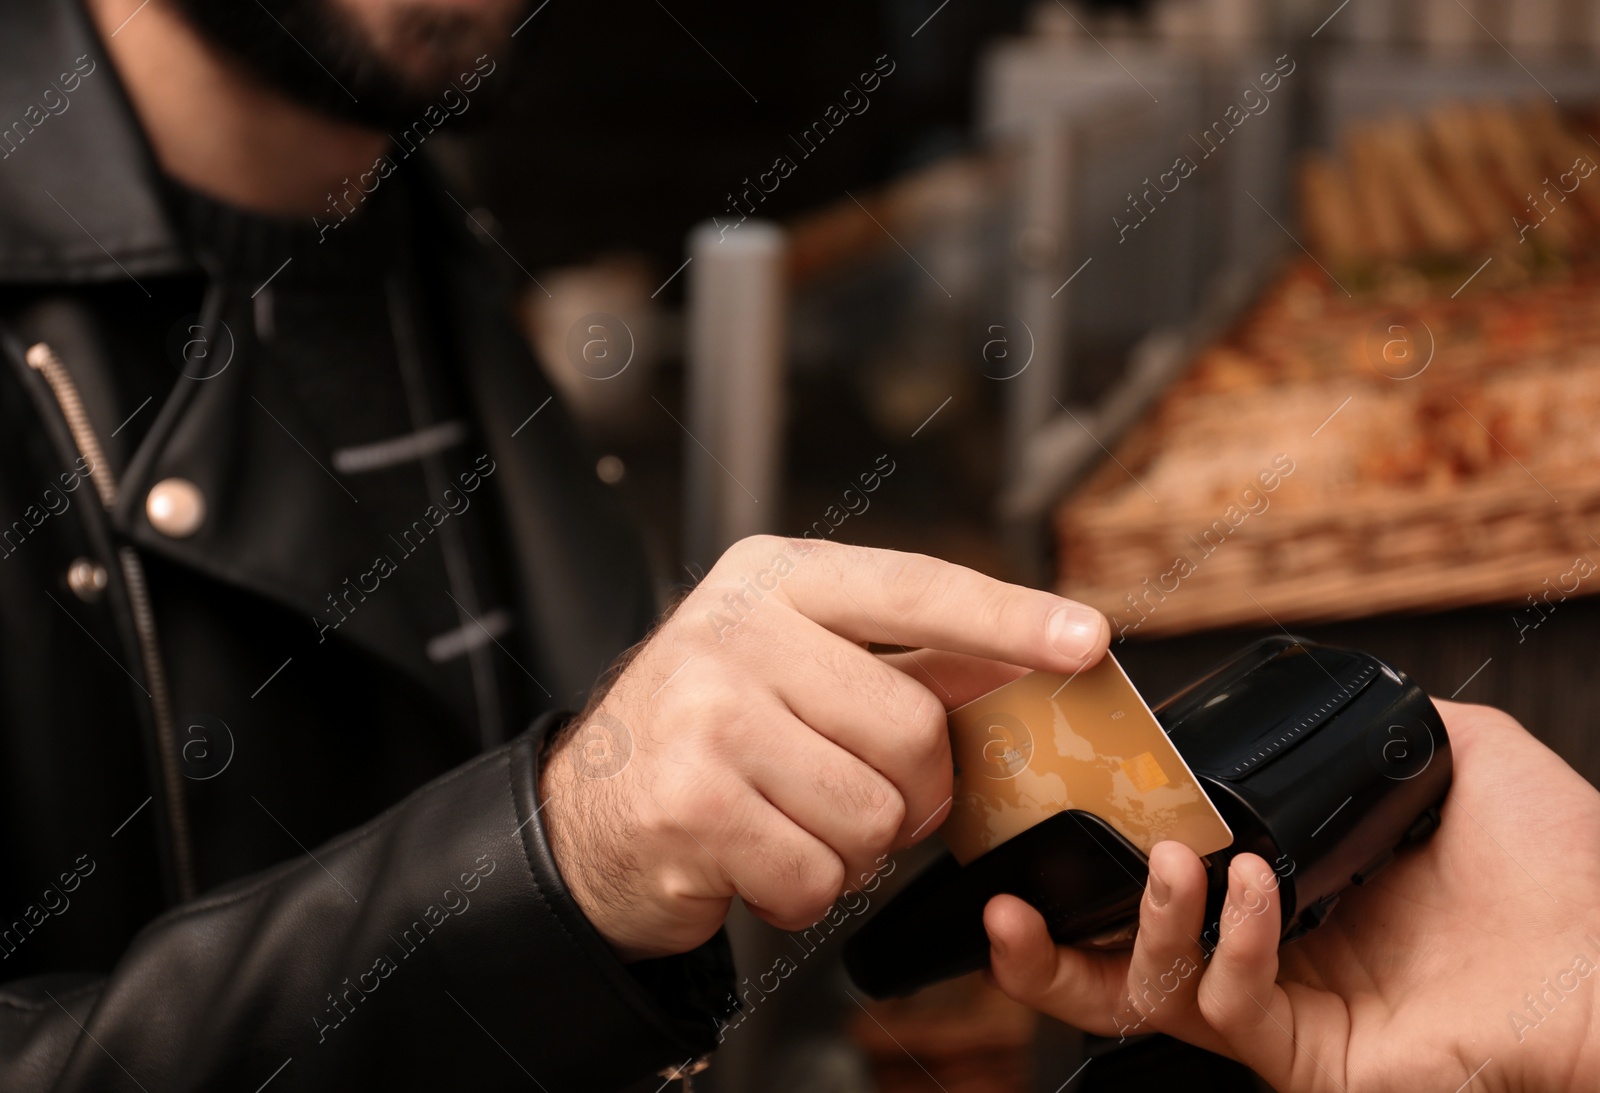 Photo of Man with credit card using payment terminal at shop, closeup